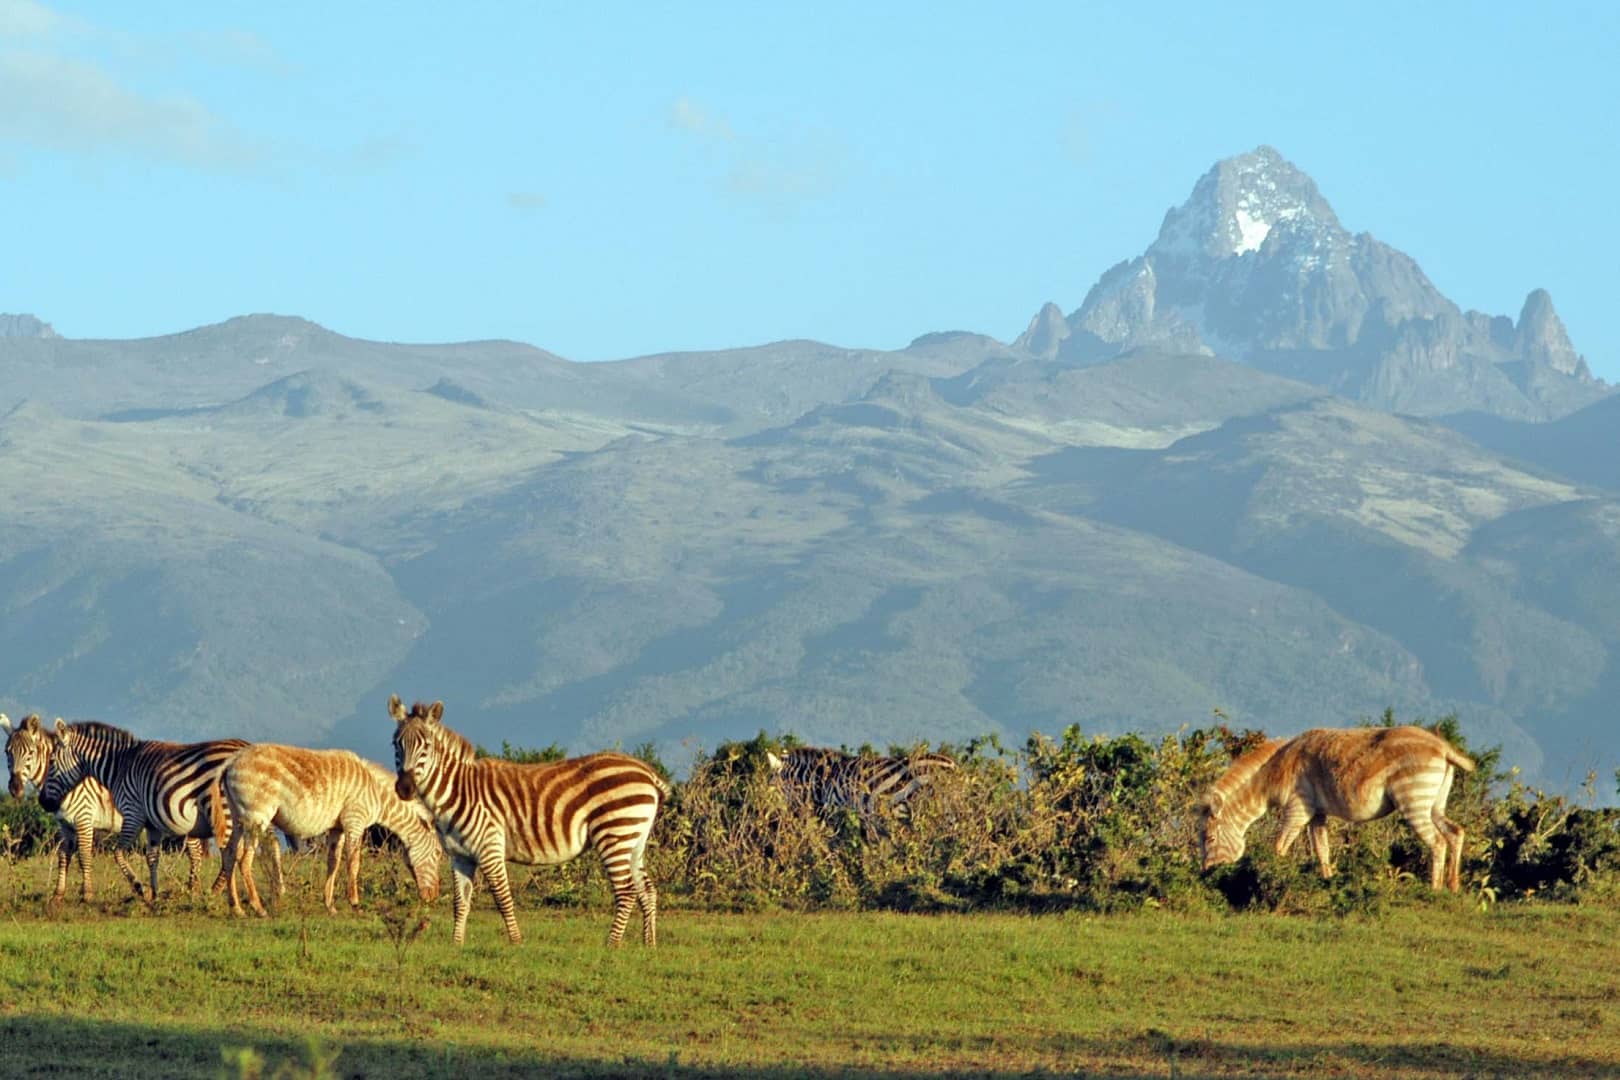 Mount Kenya view